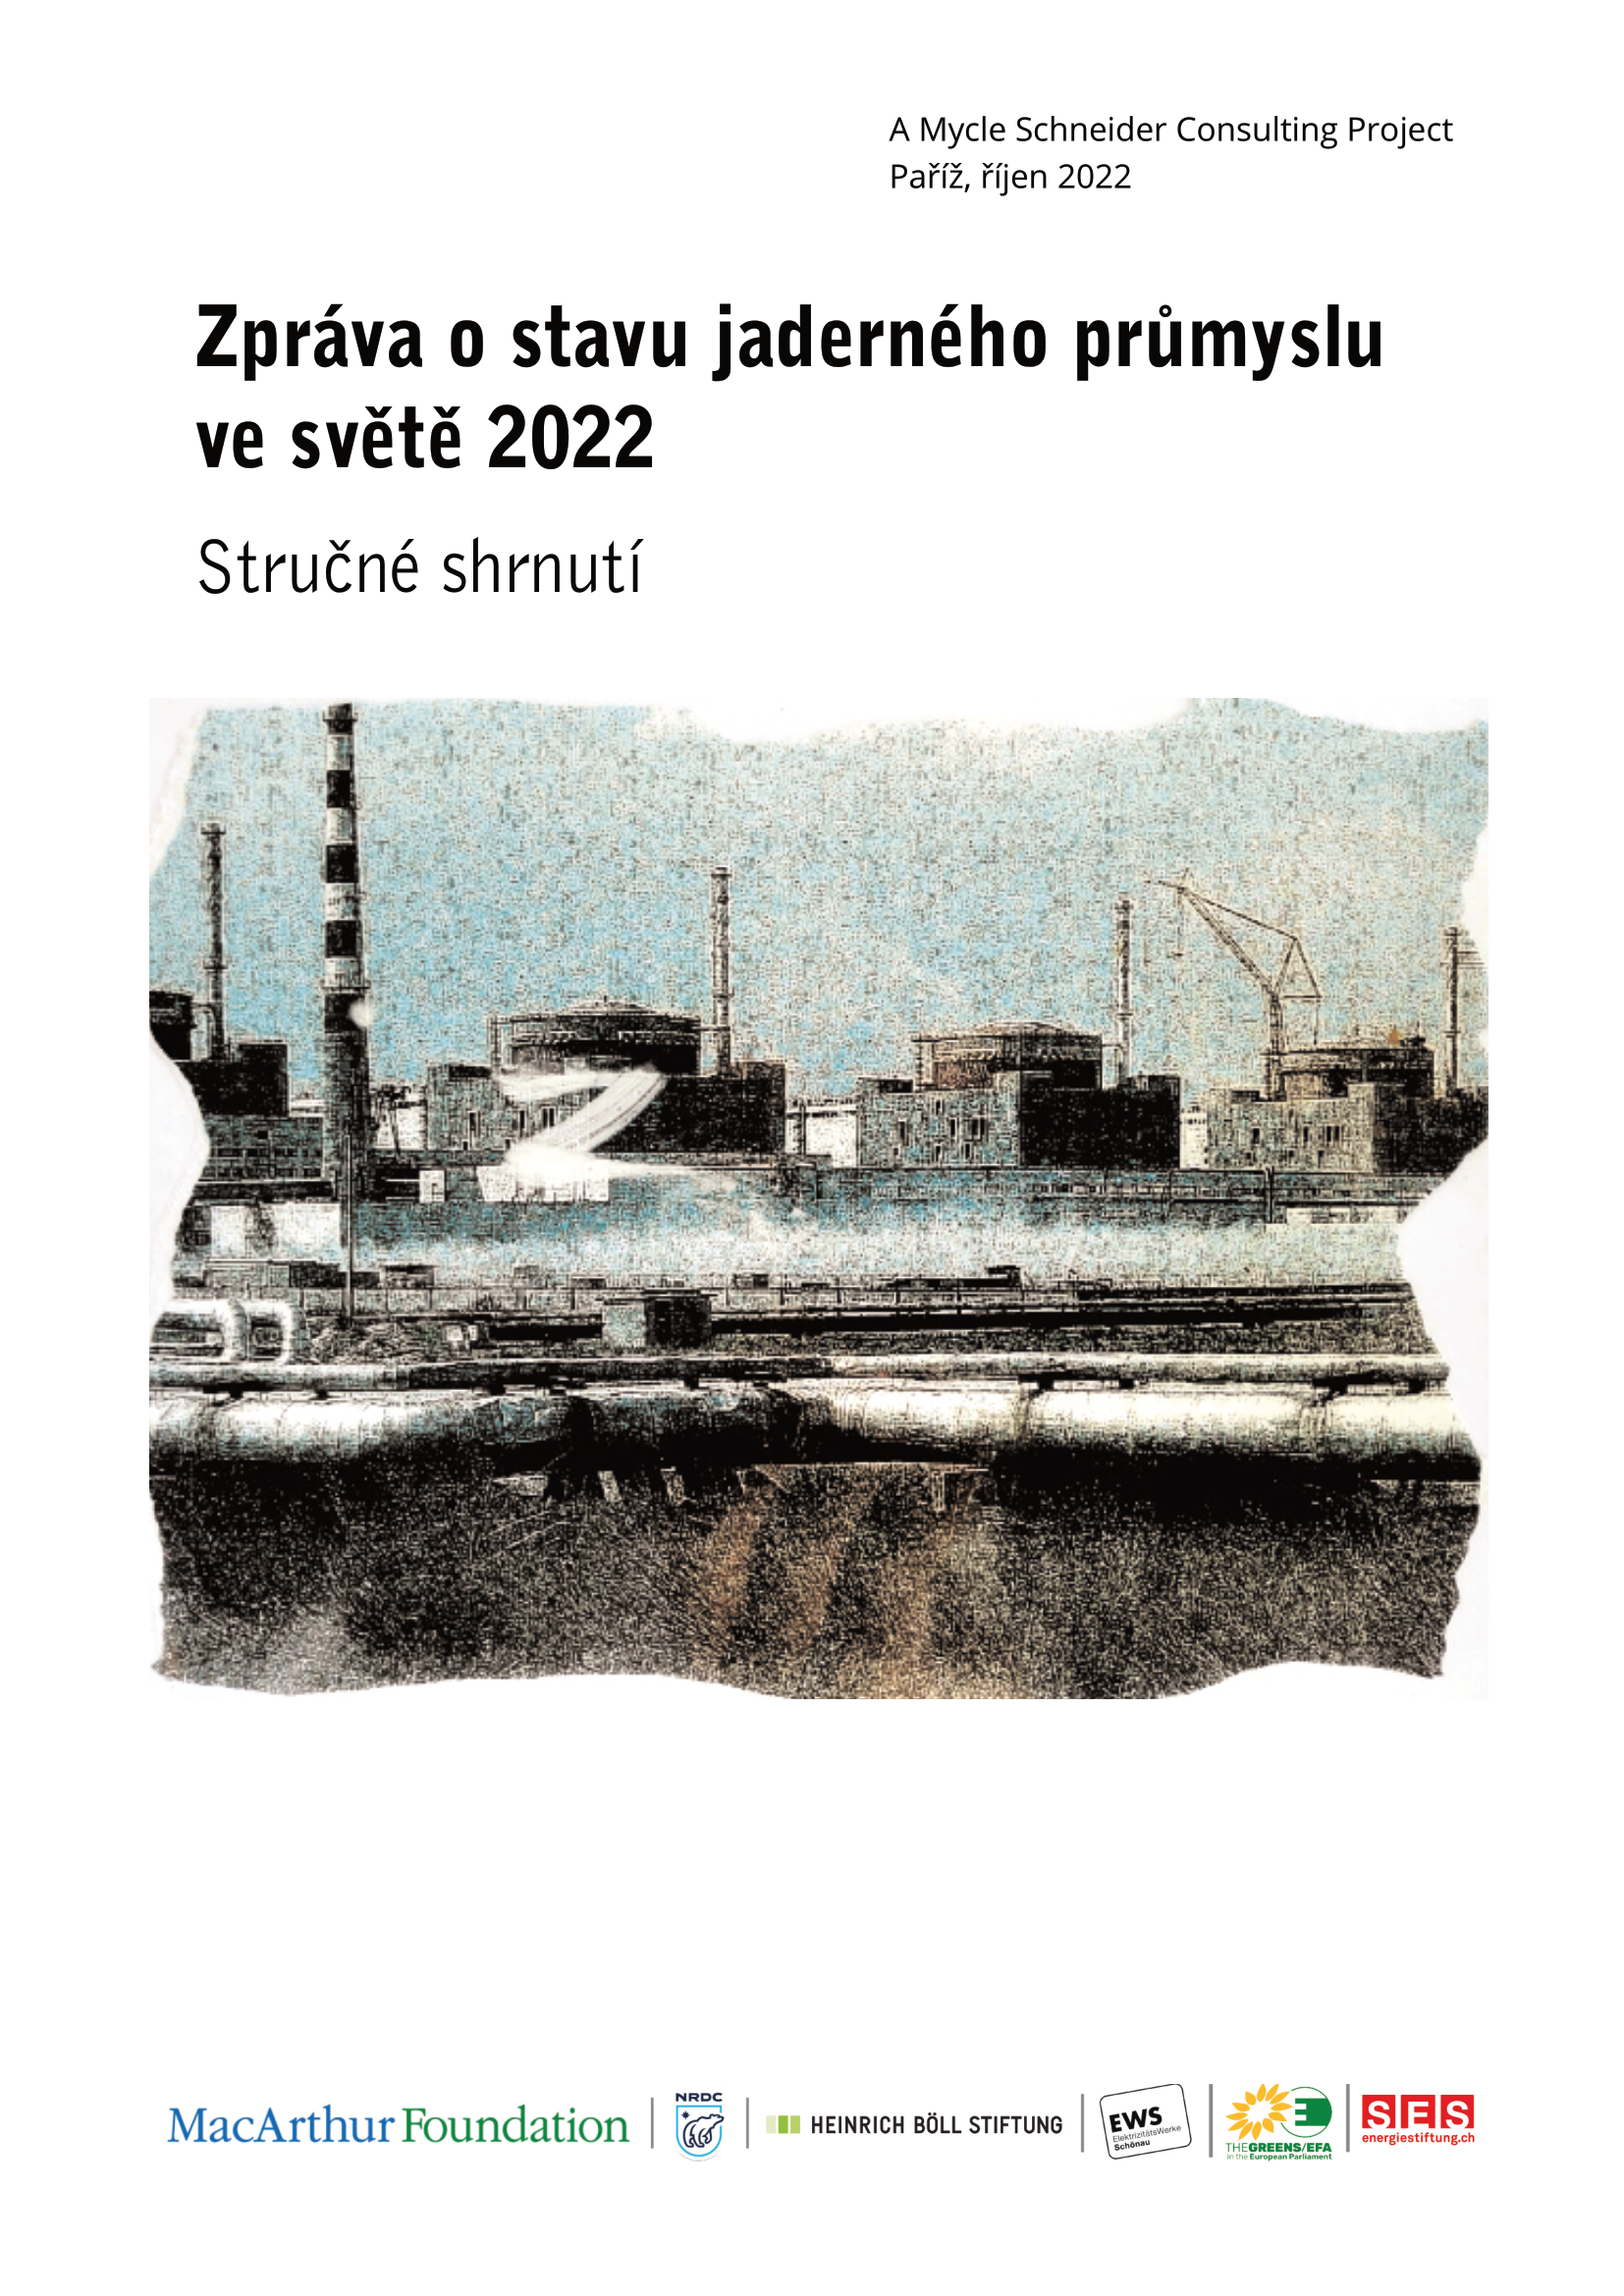 Zpráva o stavu jaderného průmyslu ve světě 2022 - České stručné shrnutí